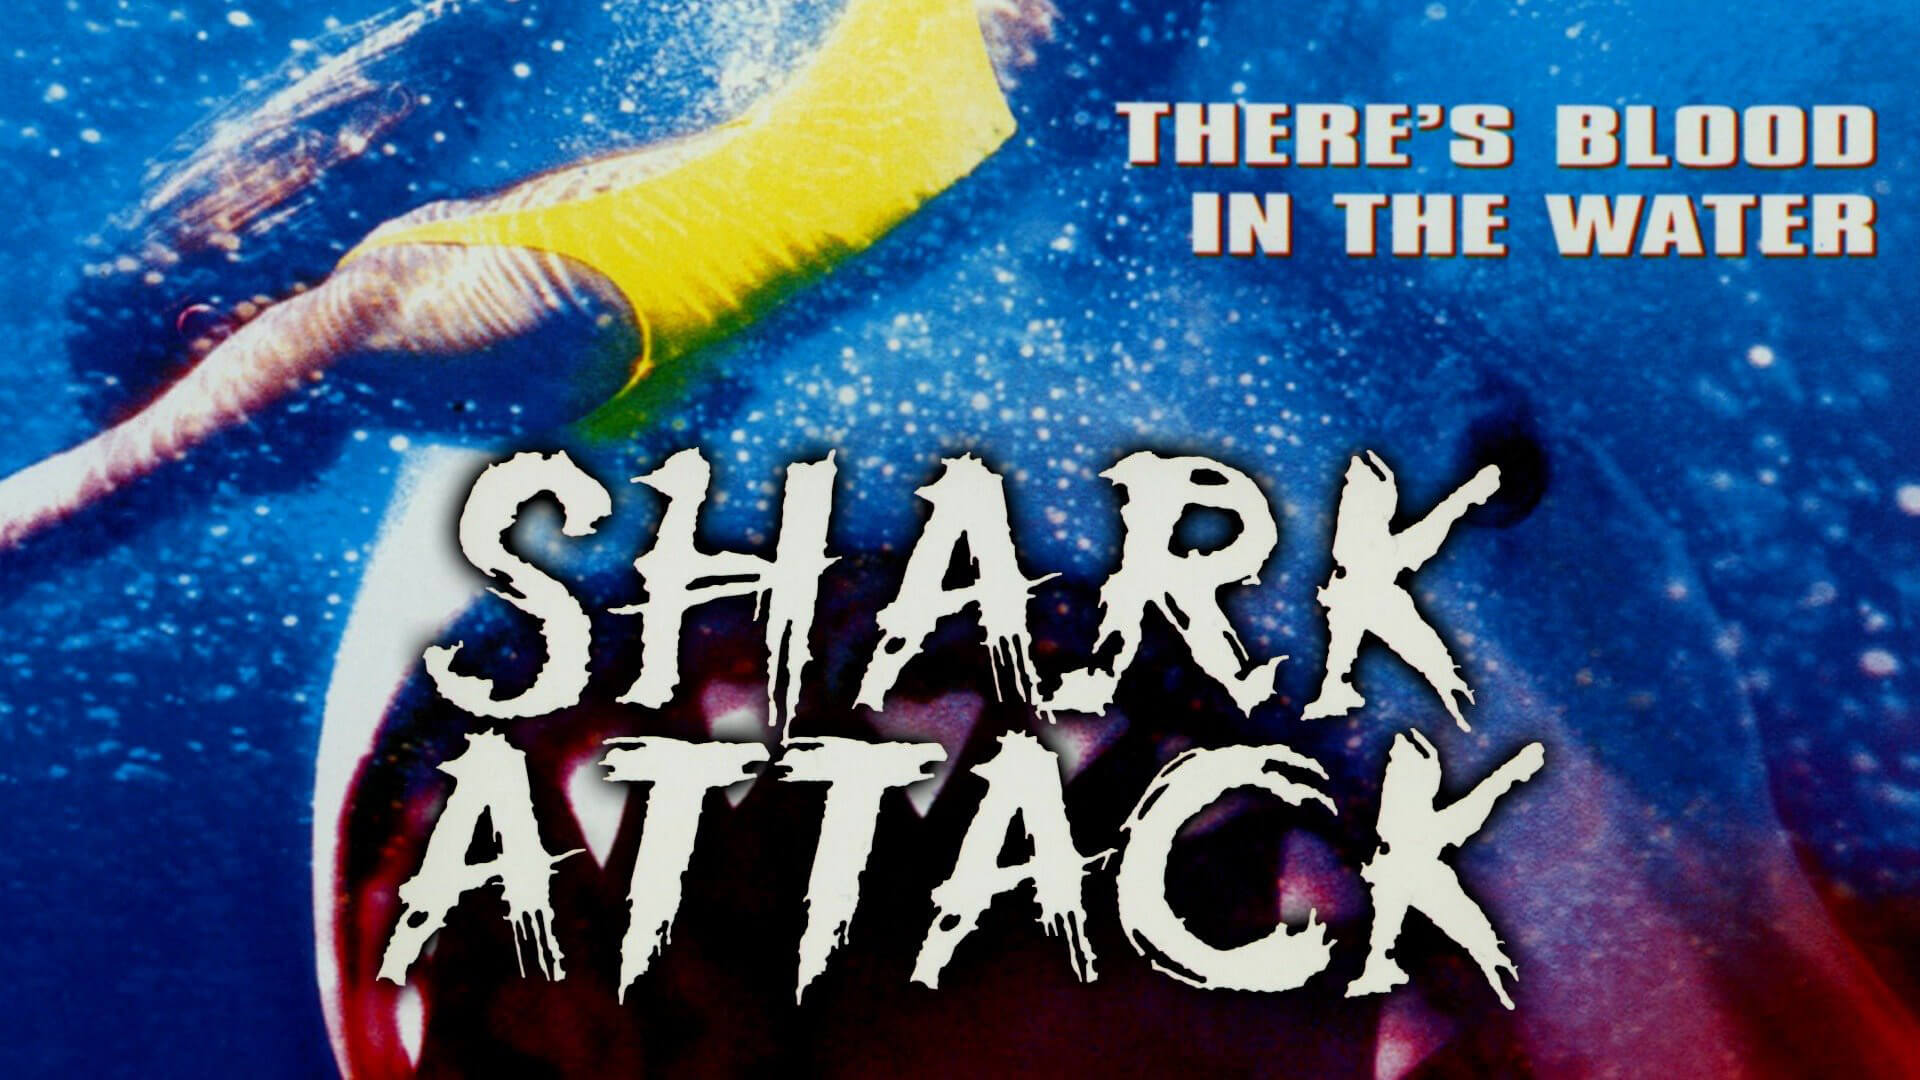 Shark Attack 1999